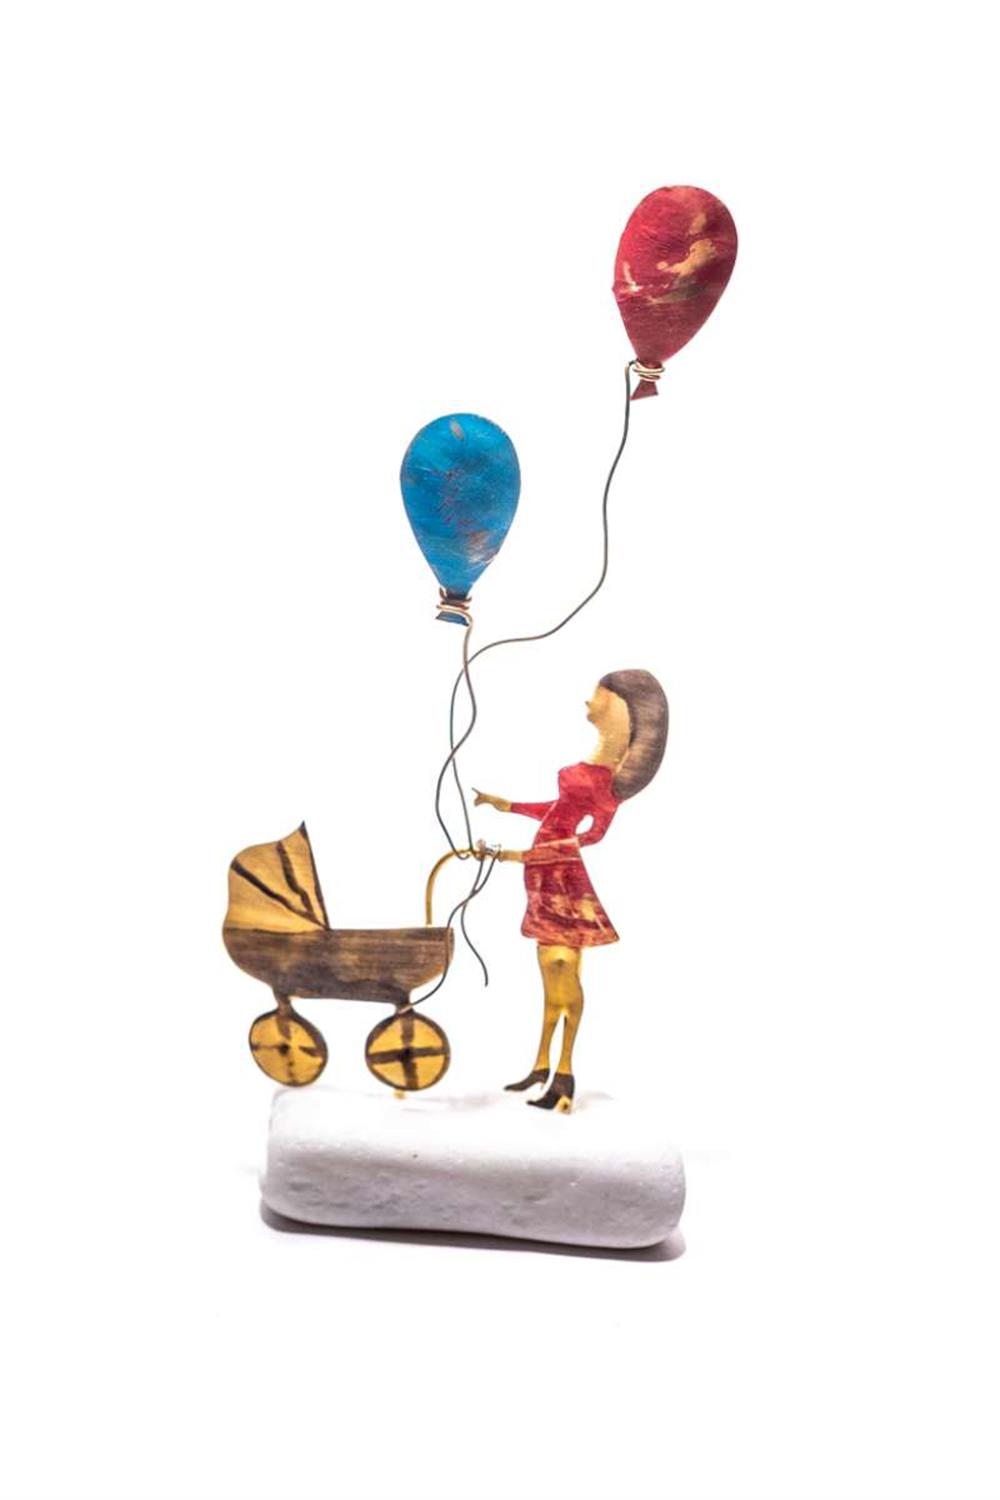 Χειροποίητο διακοσμητικό επιτραπέζιο Έγκυος με καρότσι και μπαλόνια ορειχάλκινο 7x12cm